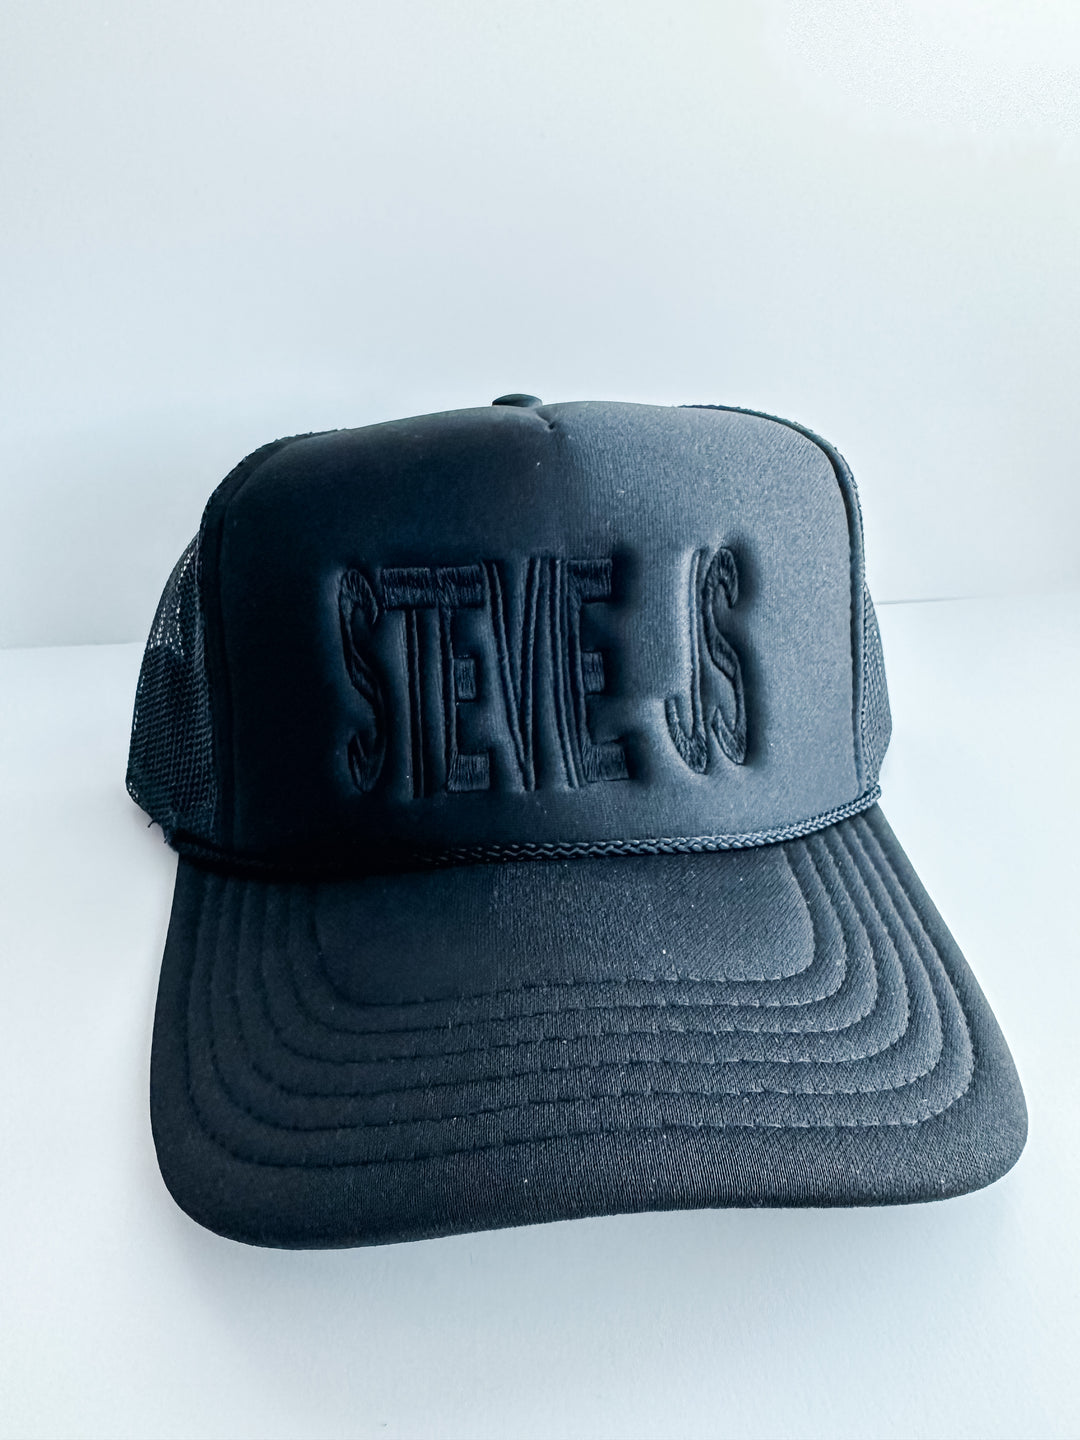 Stevie Js Black on Black Mesh Trucker Hat  Stevie Js & Co   